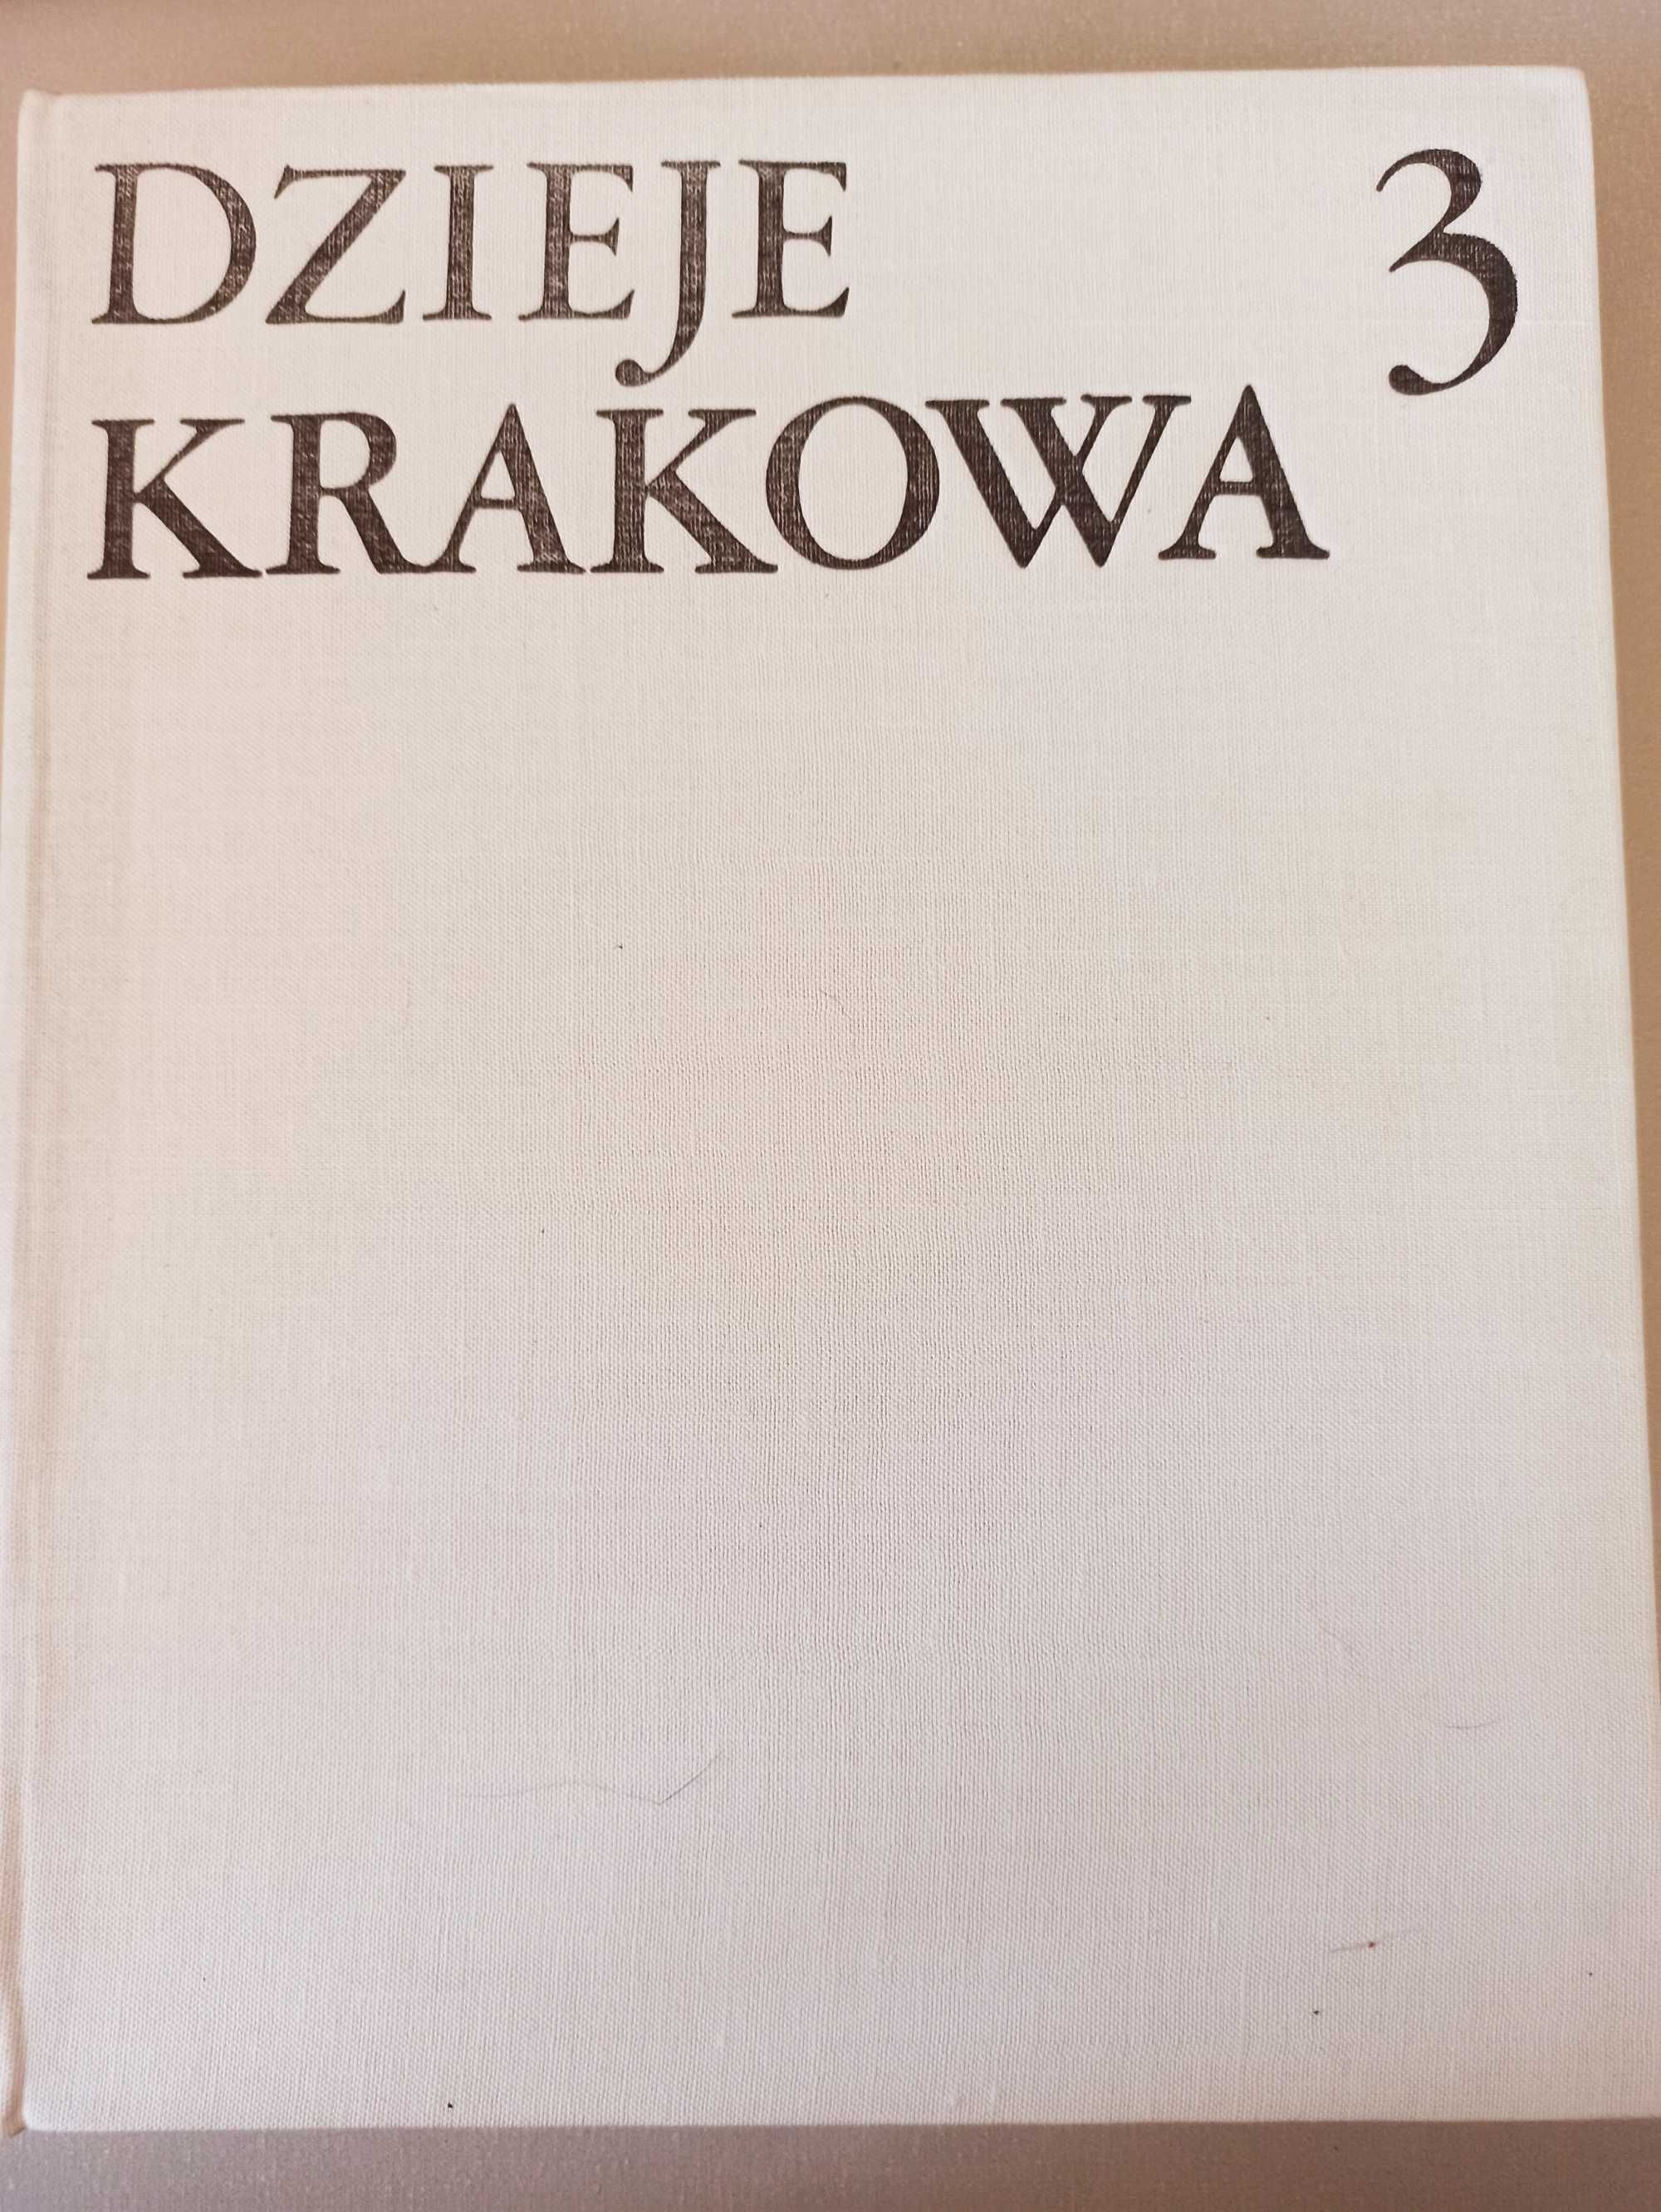 Dzieje Krakowa 3